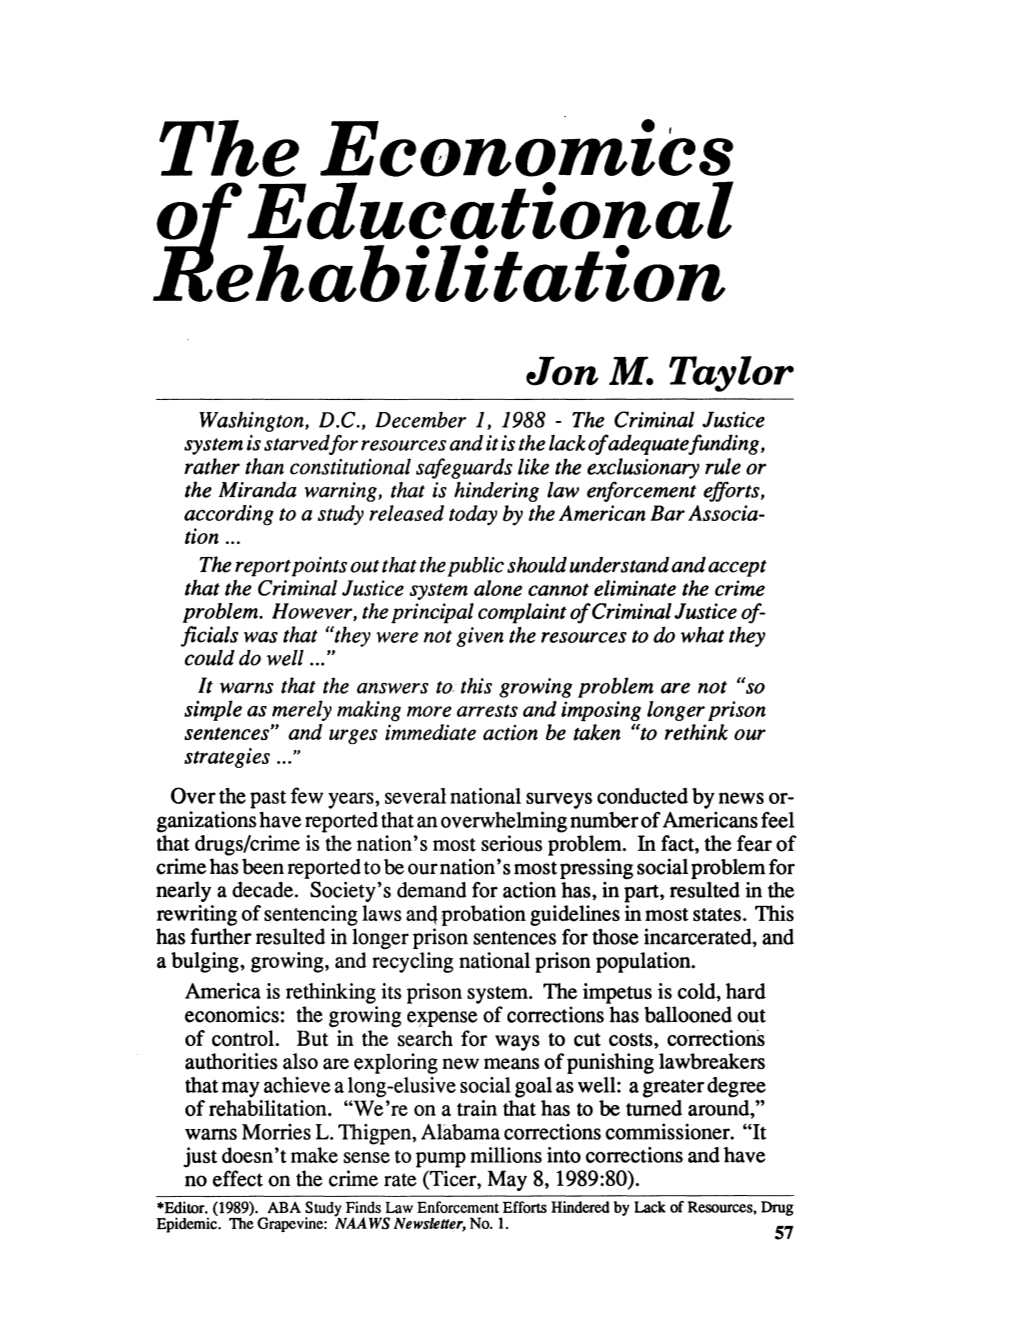 The Economics of Educational Rehabilitation Jon M